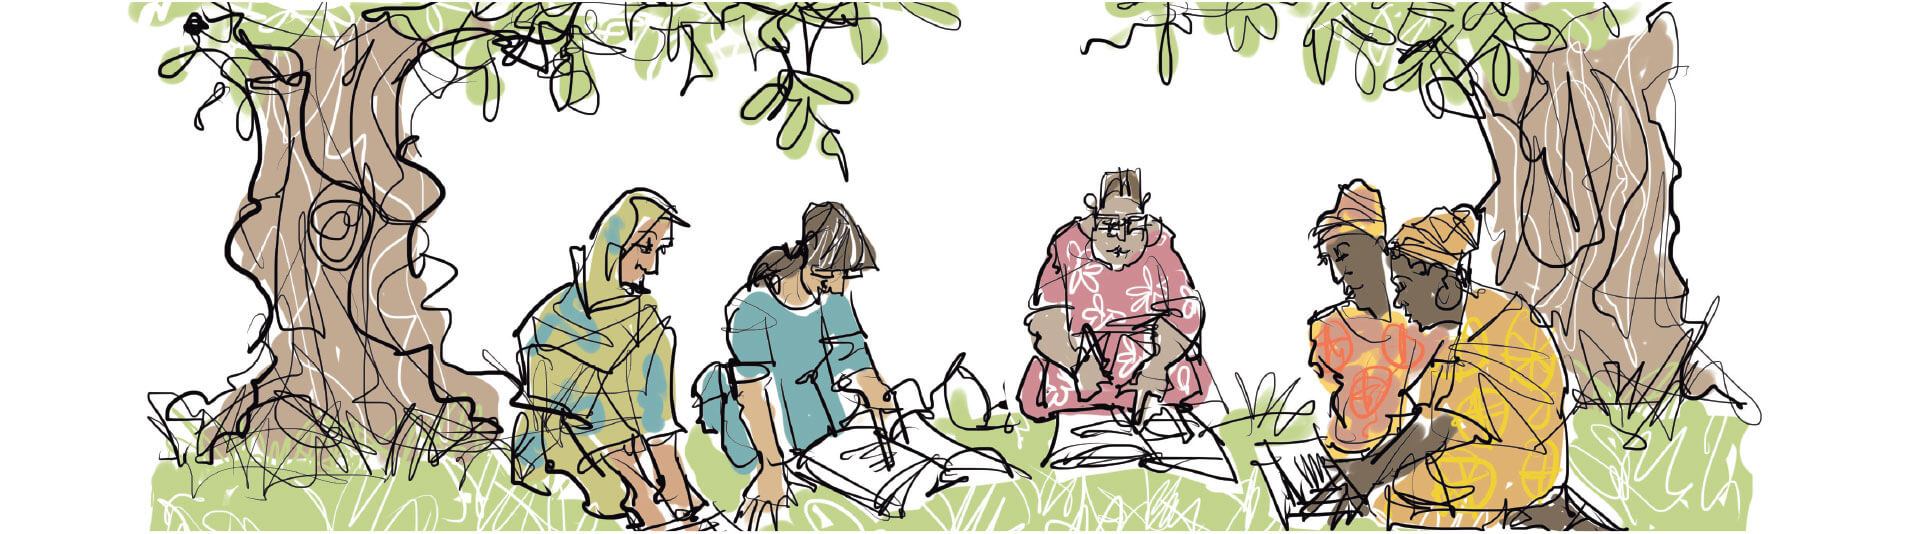 Dessin de cinq femmes assises en cercle sur le sol, à l’ombre de deux arbres, qui consultent des ouvrages. La scène représente un environnement d’apprentissage participatif. Il n’est pas possible de savoir si la séance de formation est dirigée et, le cas échéant, par qui.